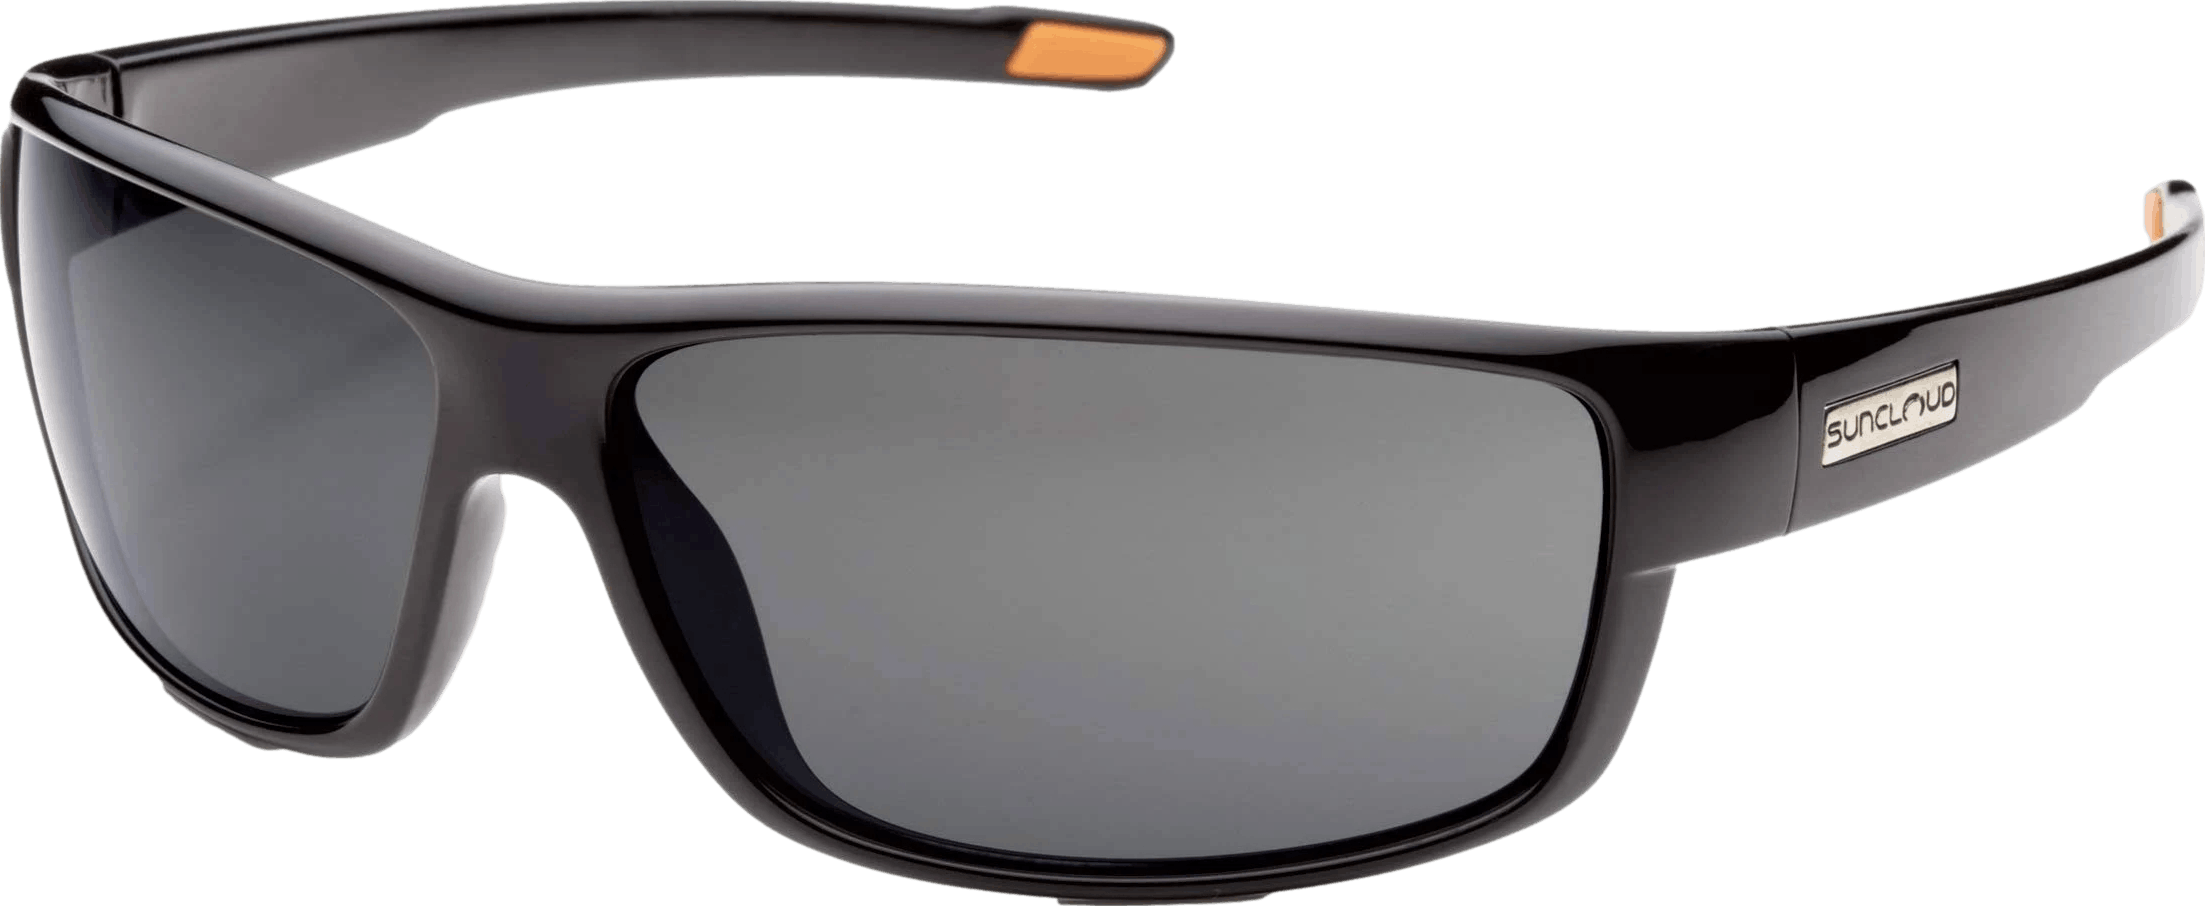 Suncloud Voucher Polarized Black Sunglasses